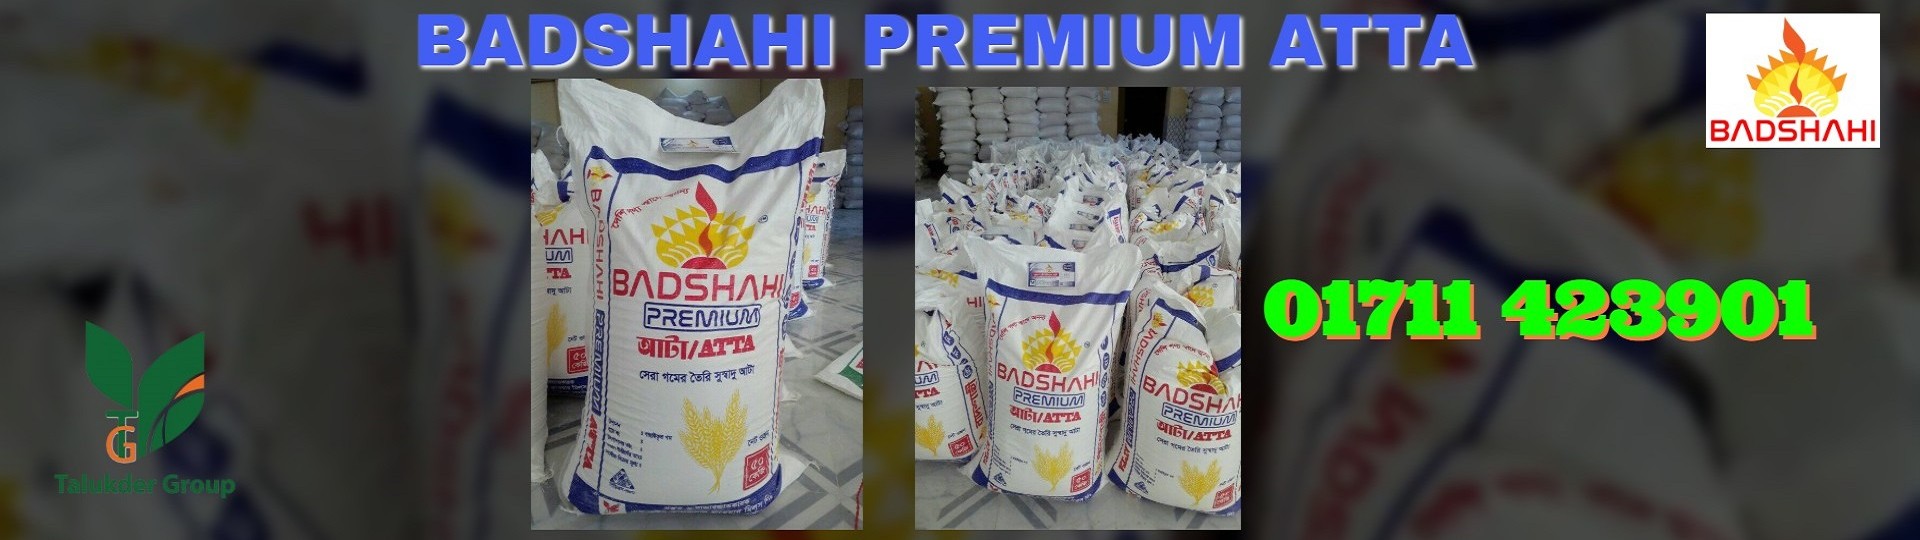 Badshahi Premium Atta